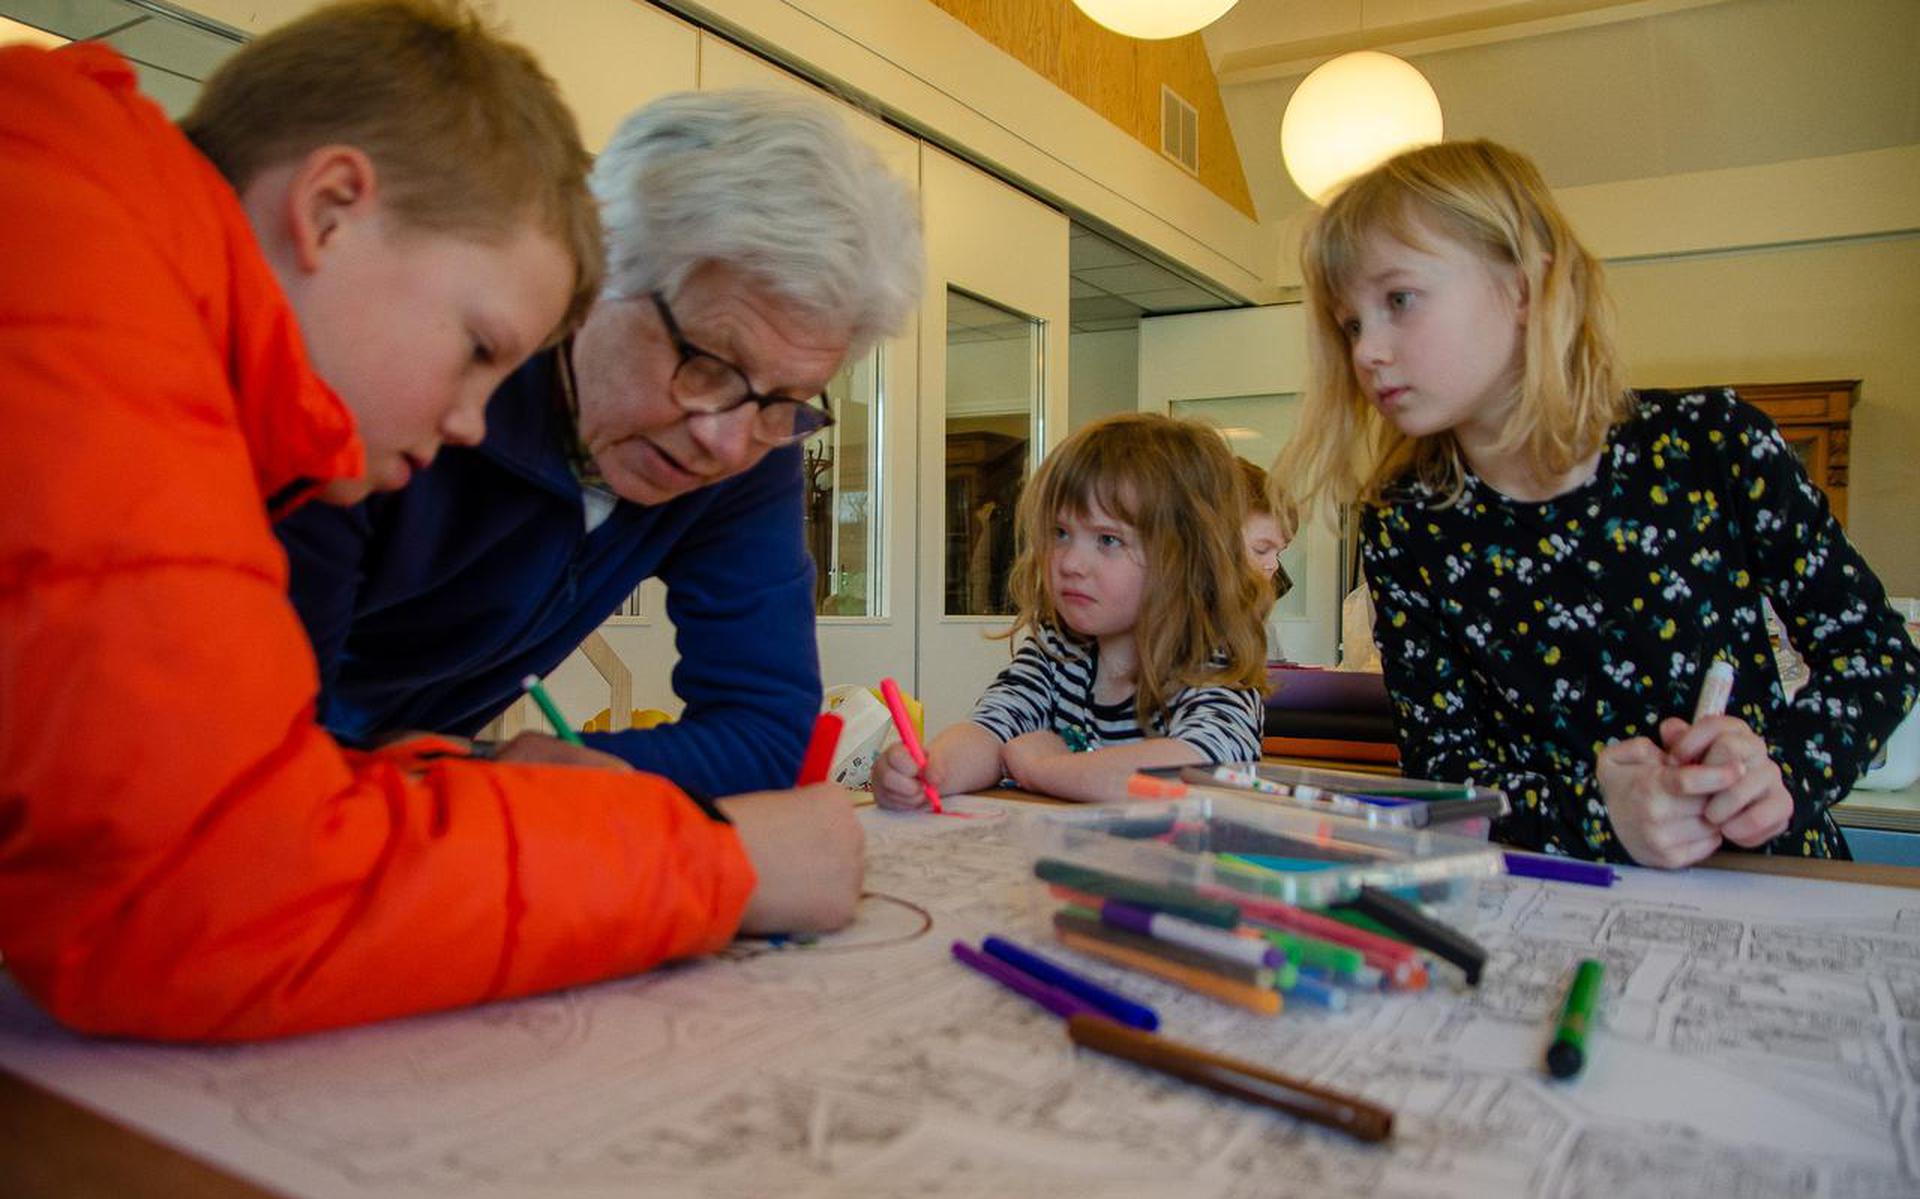 Sven en zijn oma nemen een hoekje van de grote tekening voor hun rekening. Sanna en Marrit een andere hoek.